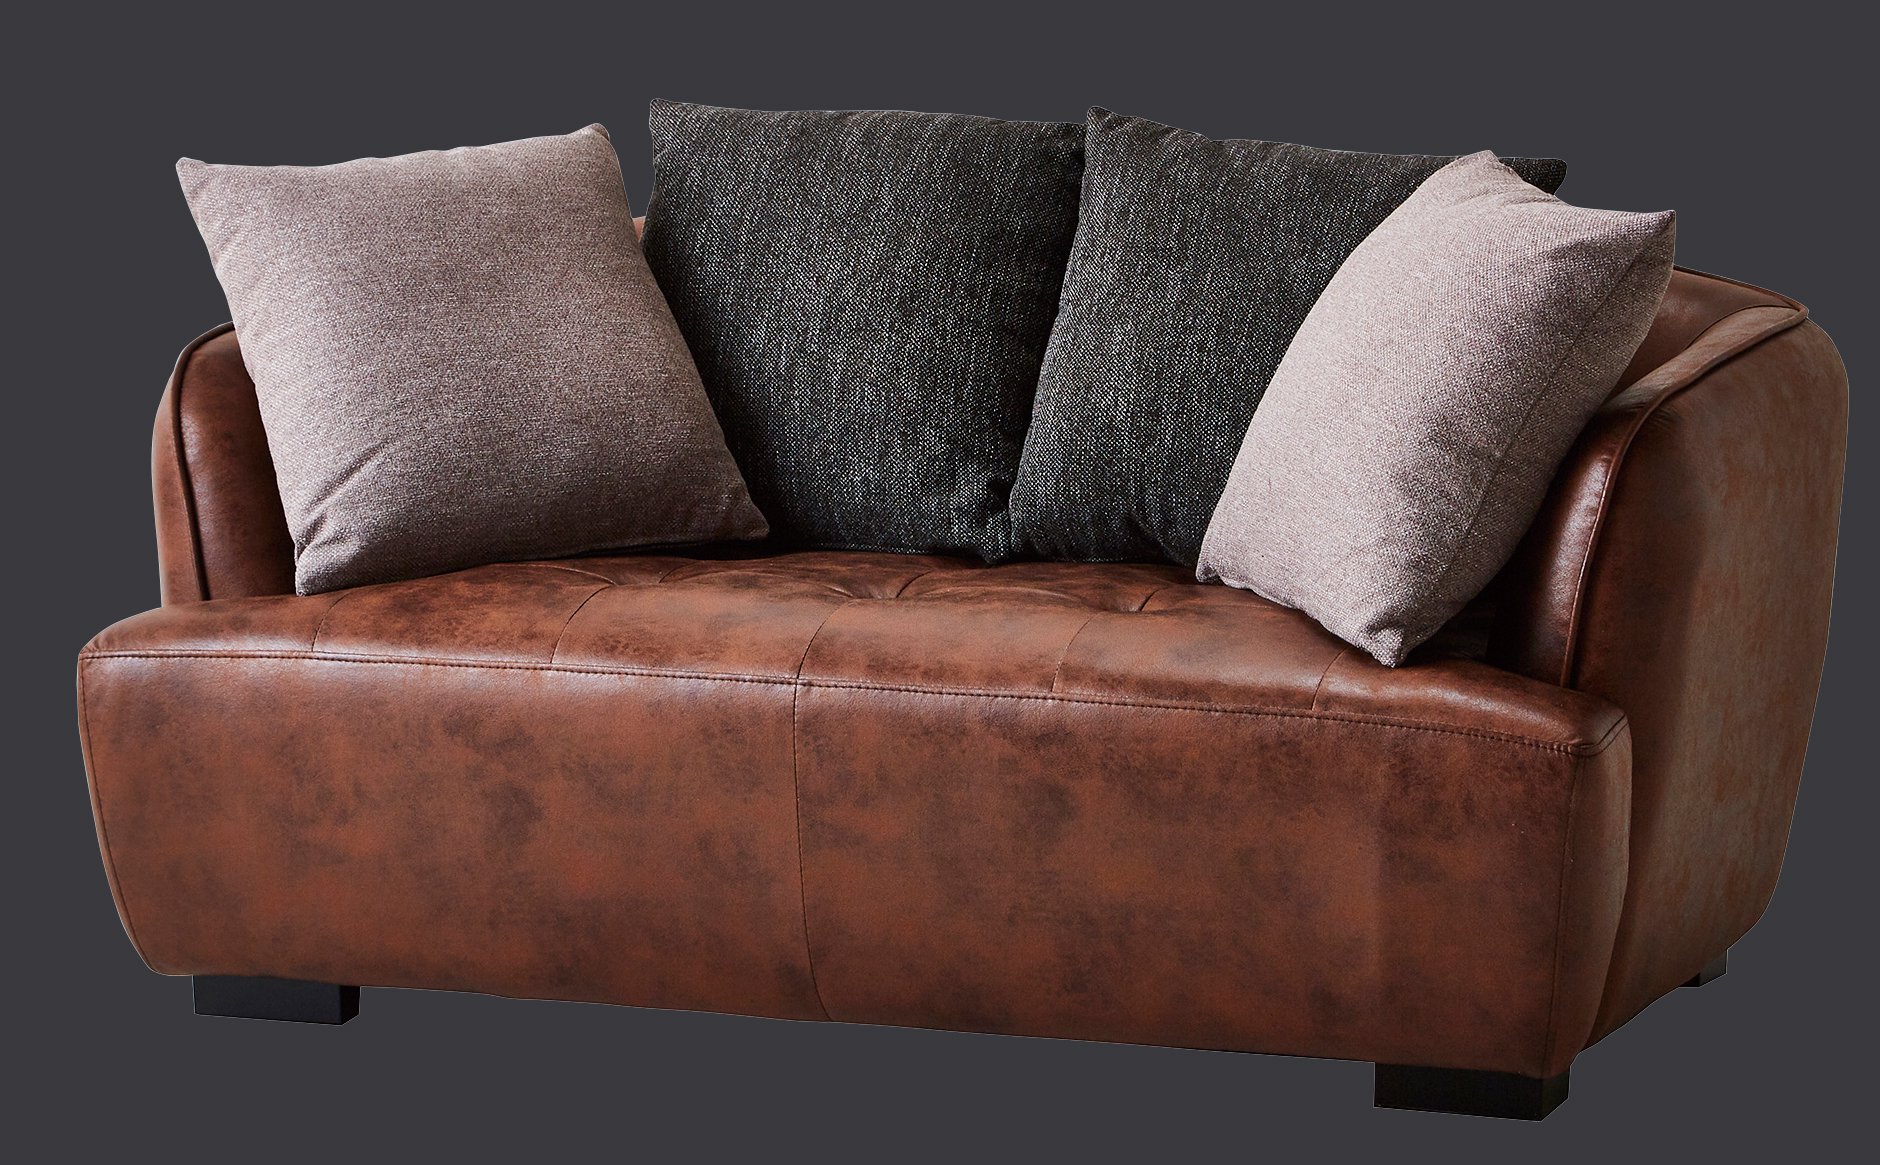 ボルドー ソファ 通気性、強度に優れた新素材「エアレザー」採用（2サイズ） - 家具のささおか オンラインショップ